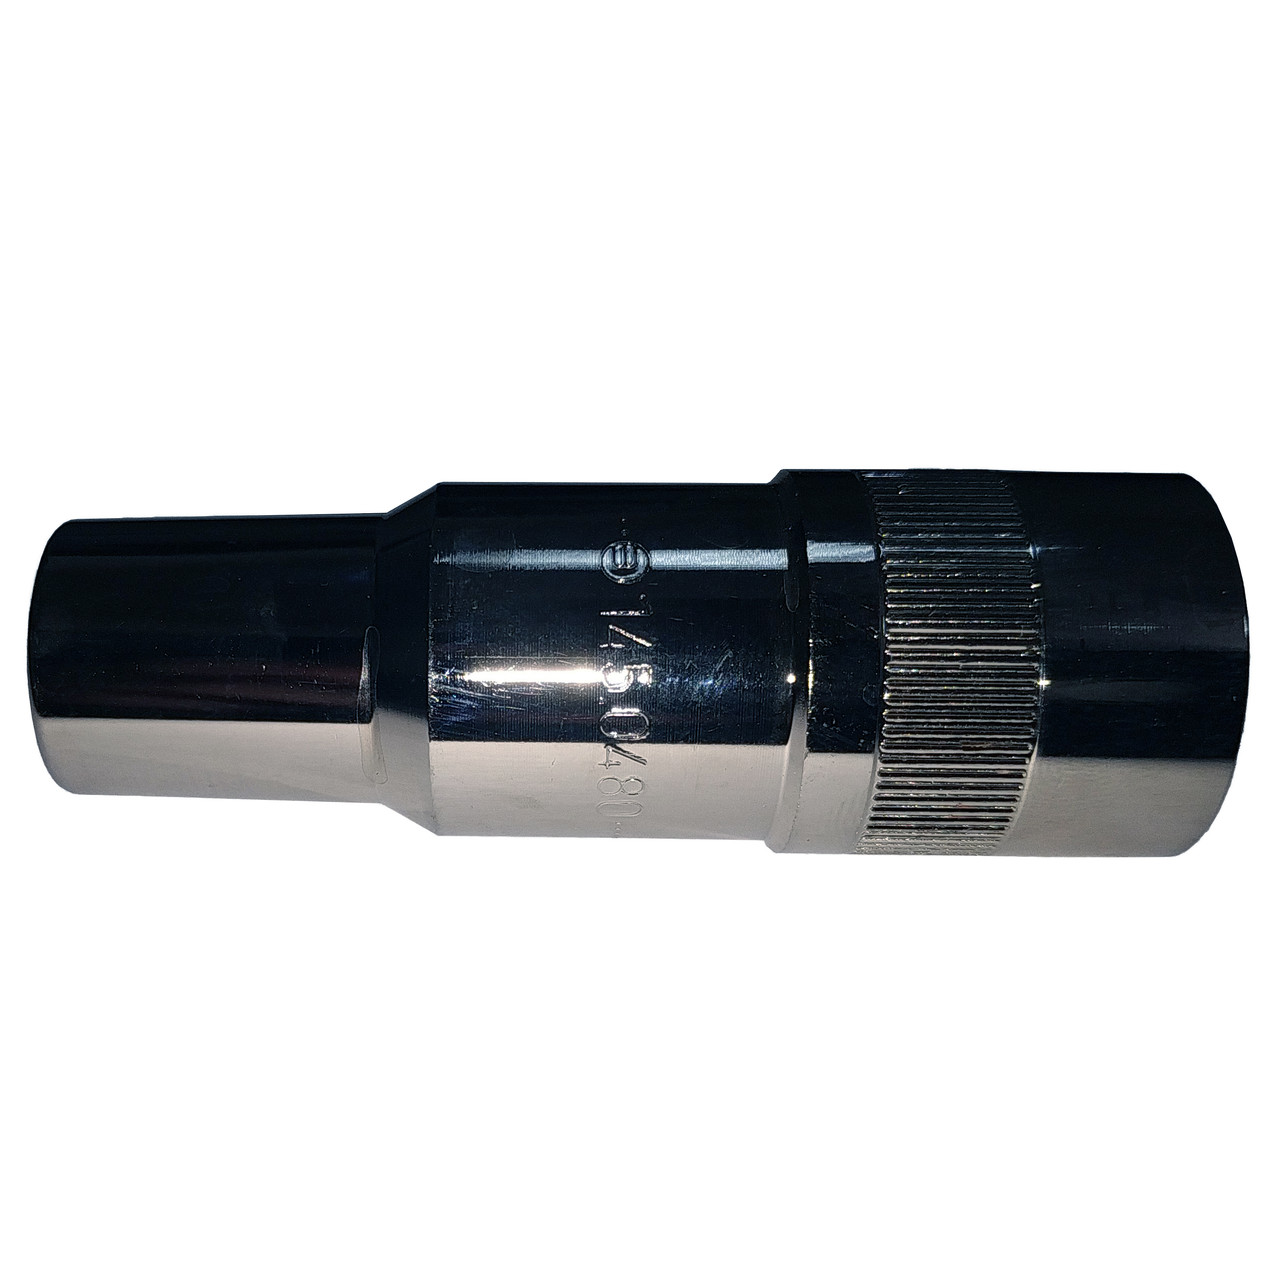 Газове сопло Ø 15.5 / 77.0 mm., Abicor Binzel для роботизованого пальника ROBO WH W500, VTS 500